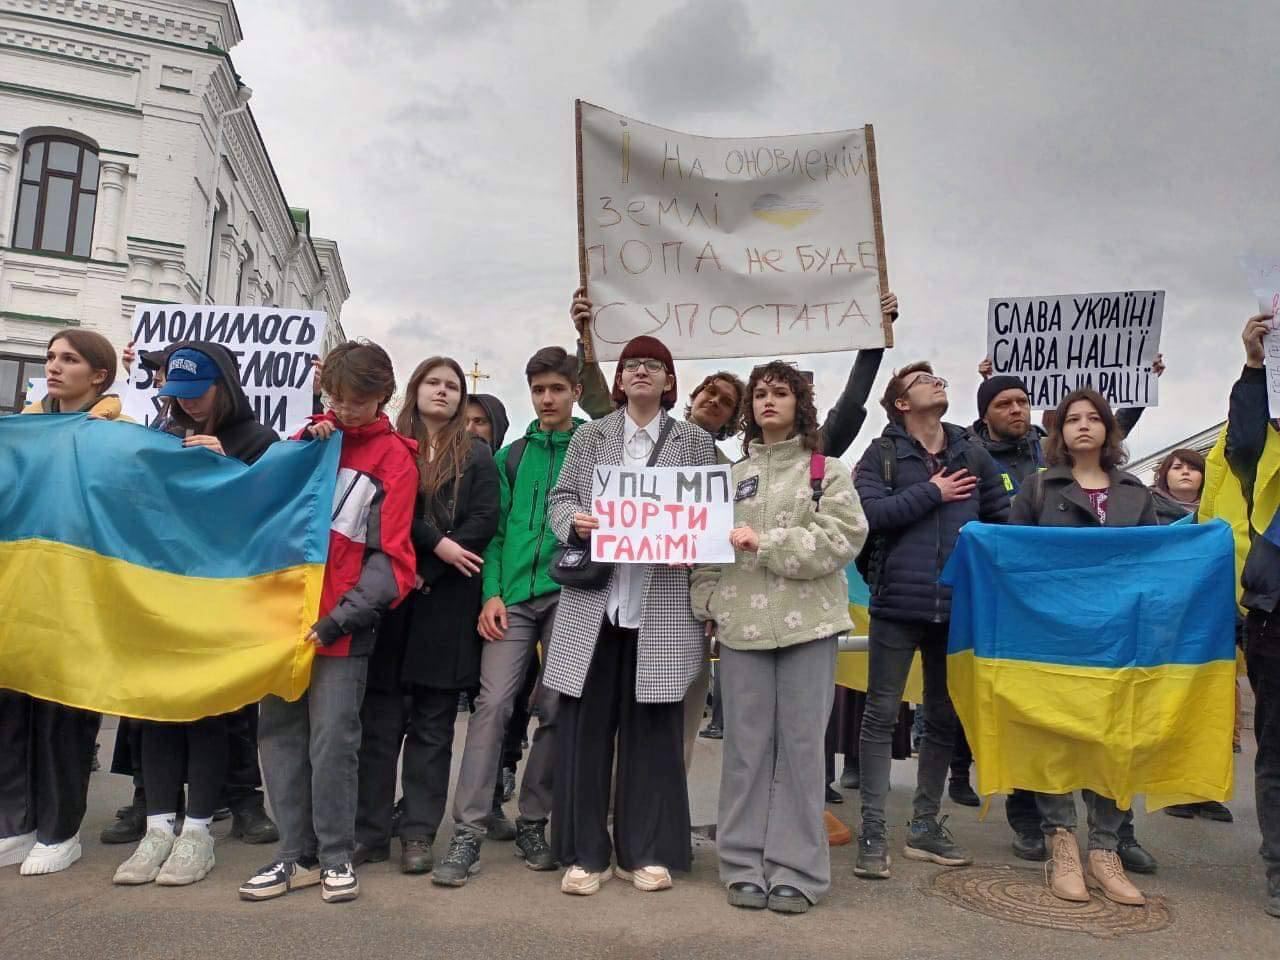 "Пашу – в Рашу": возле Киево-Печерской лавры прошел митинг против УПЦ МП. Фото и видео